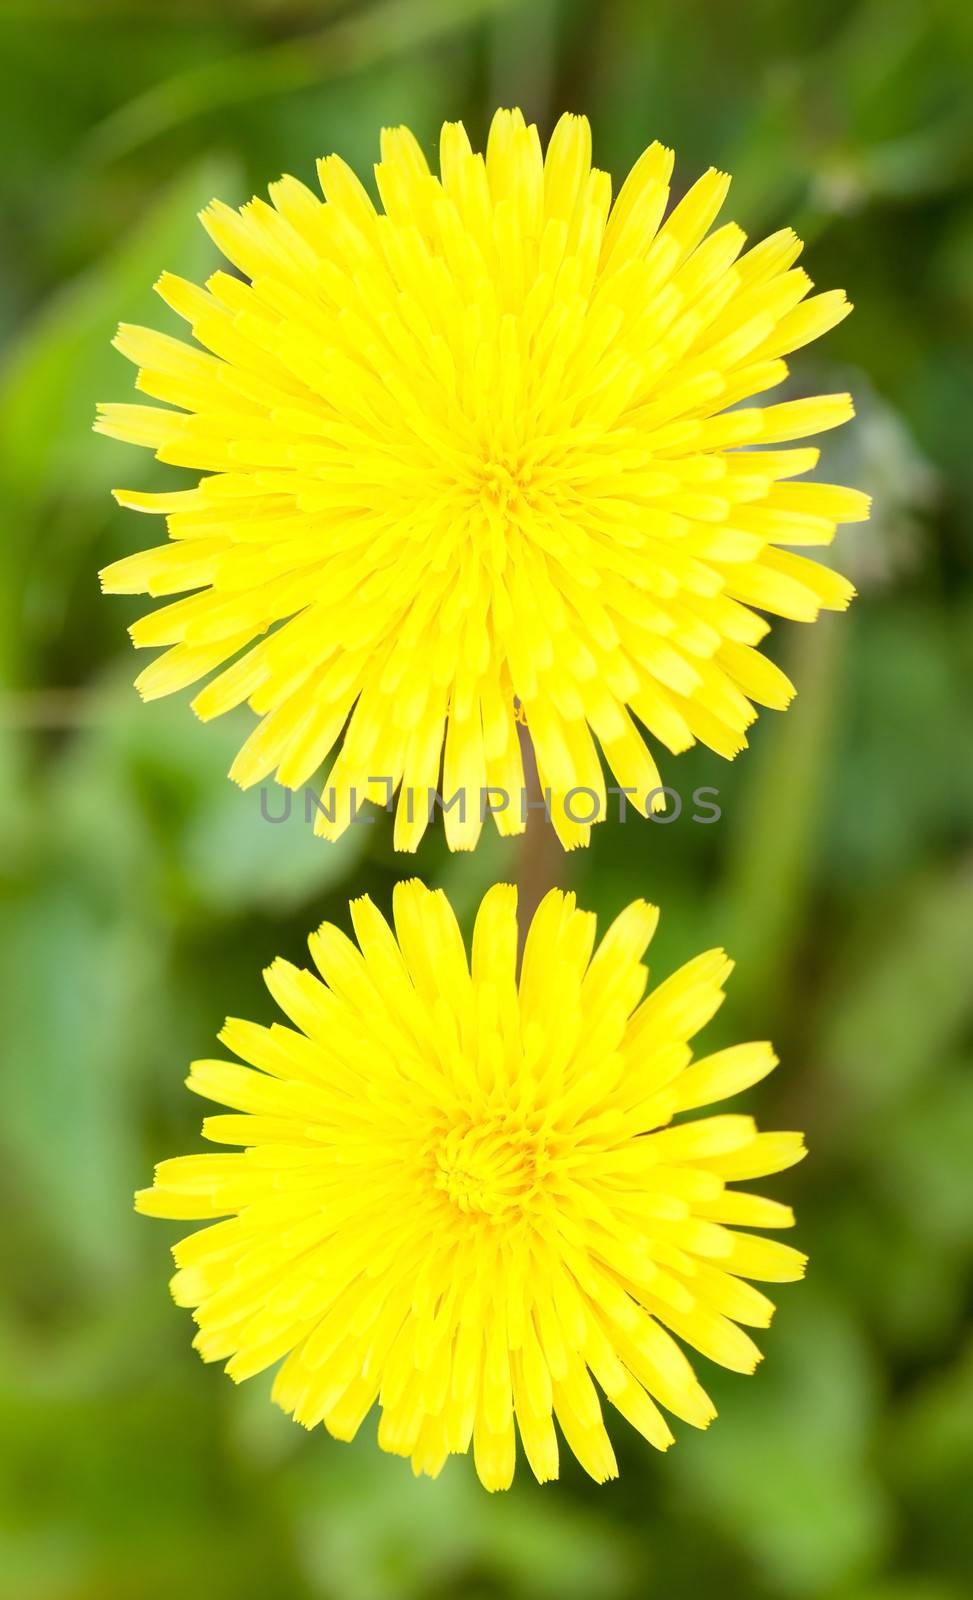 Two yellow dandelions by AleksandrN